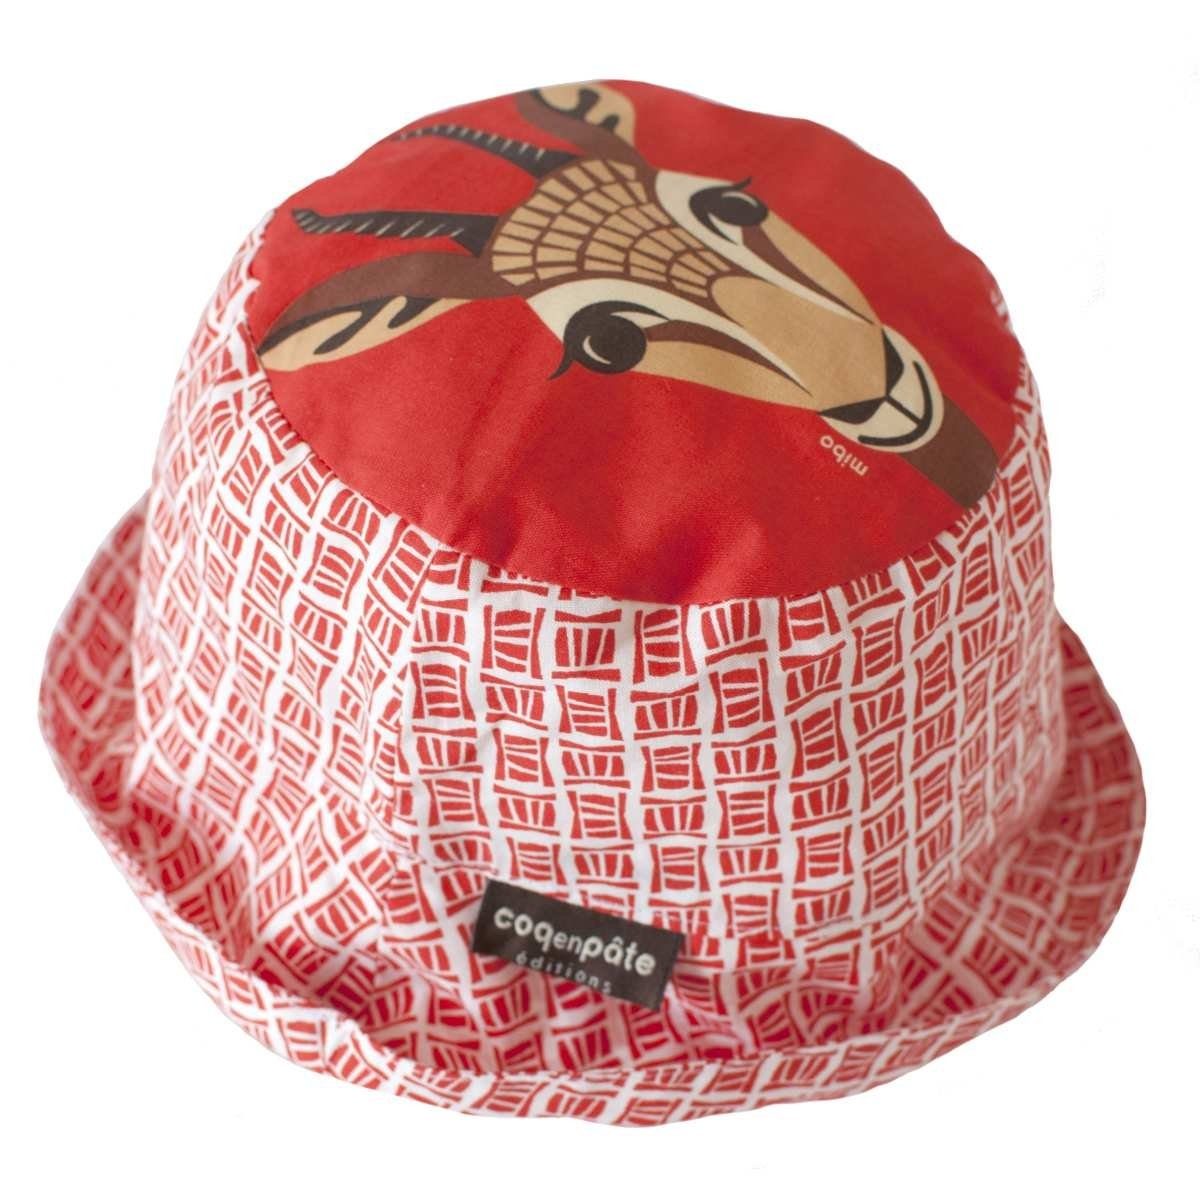 COQ EN PATE Sonnenhut Farbenfroher Kinder-Hut mit Tiermotiven und Mustern Sonnenschutz Gazelle - Größe: M